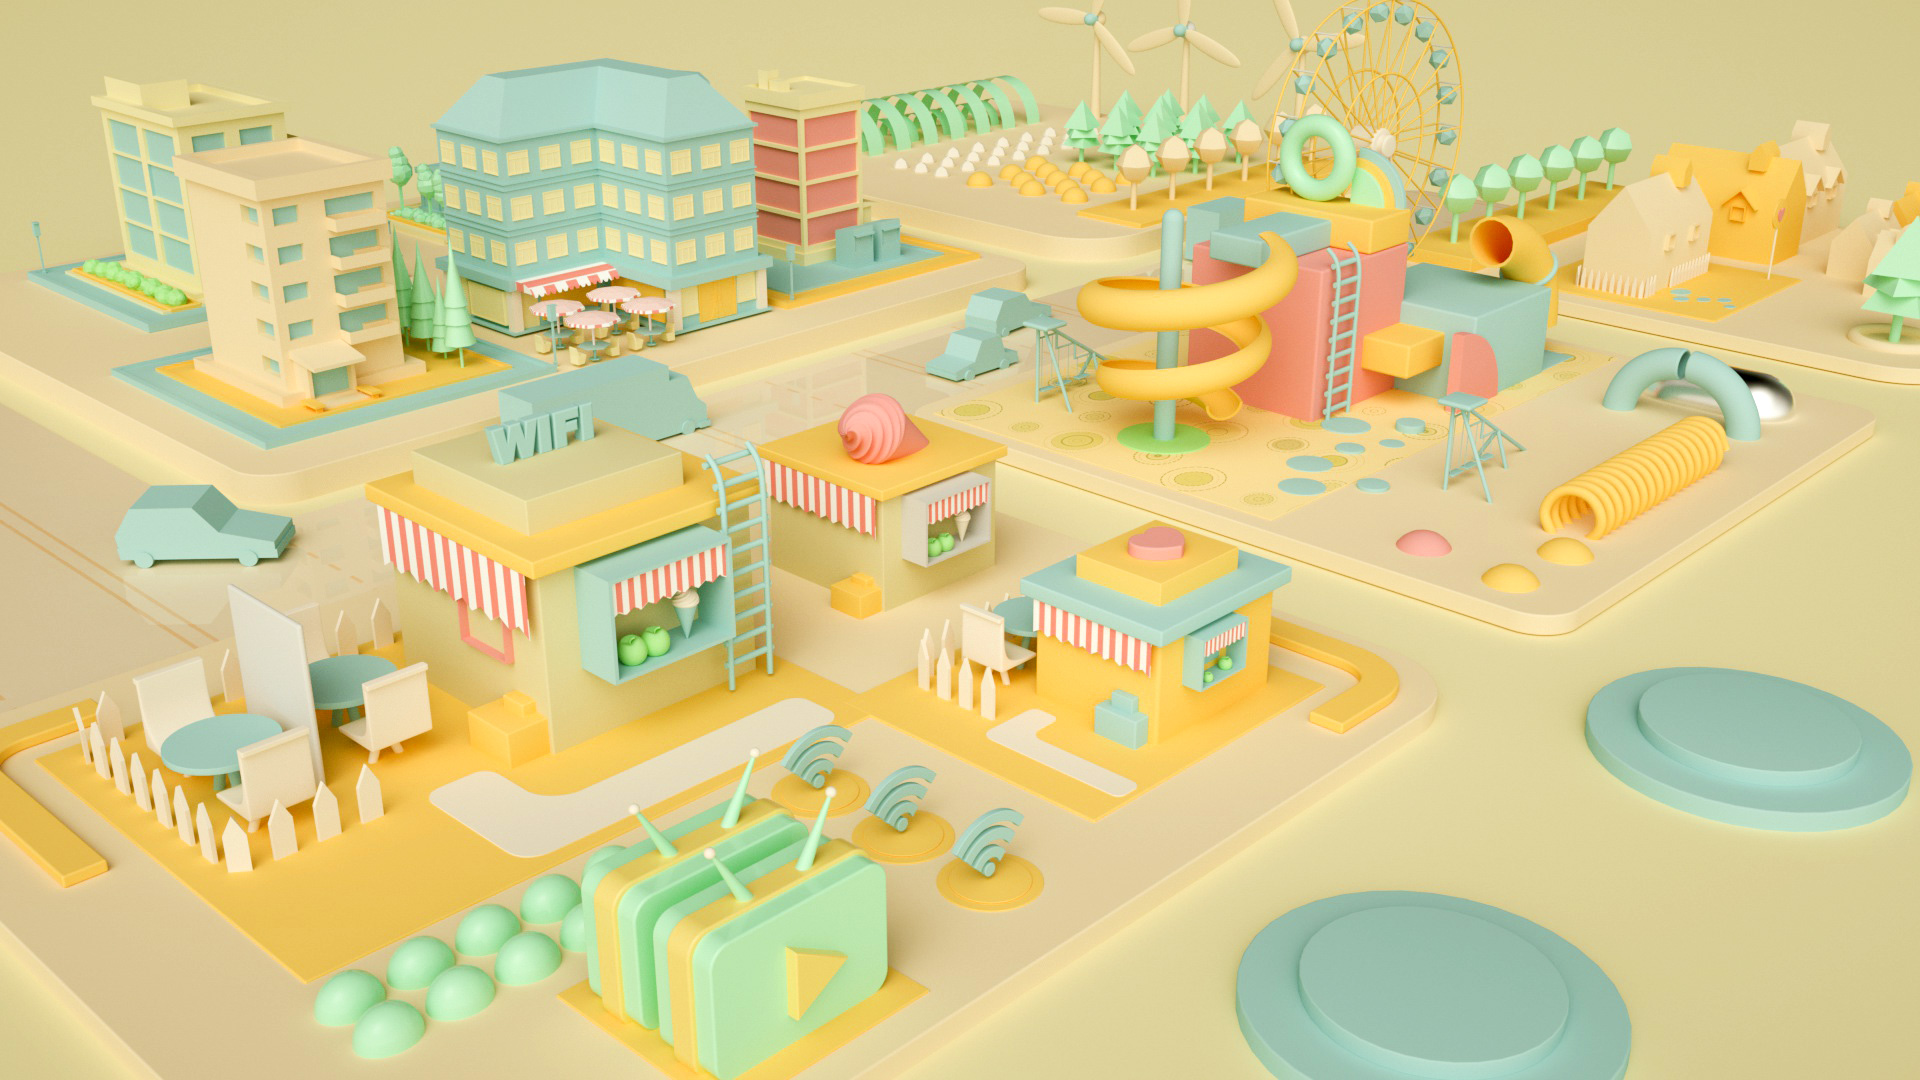 C4D模型虚拟购物场所3d场景设计C4D模型虚拟购物场所3d场景设计.jpg